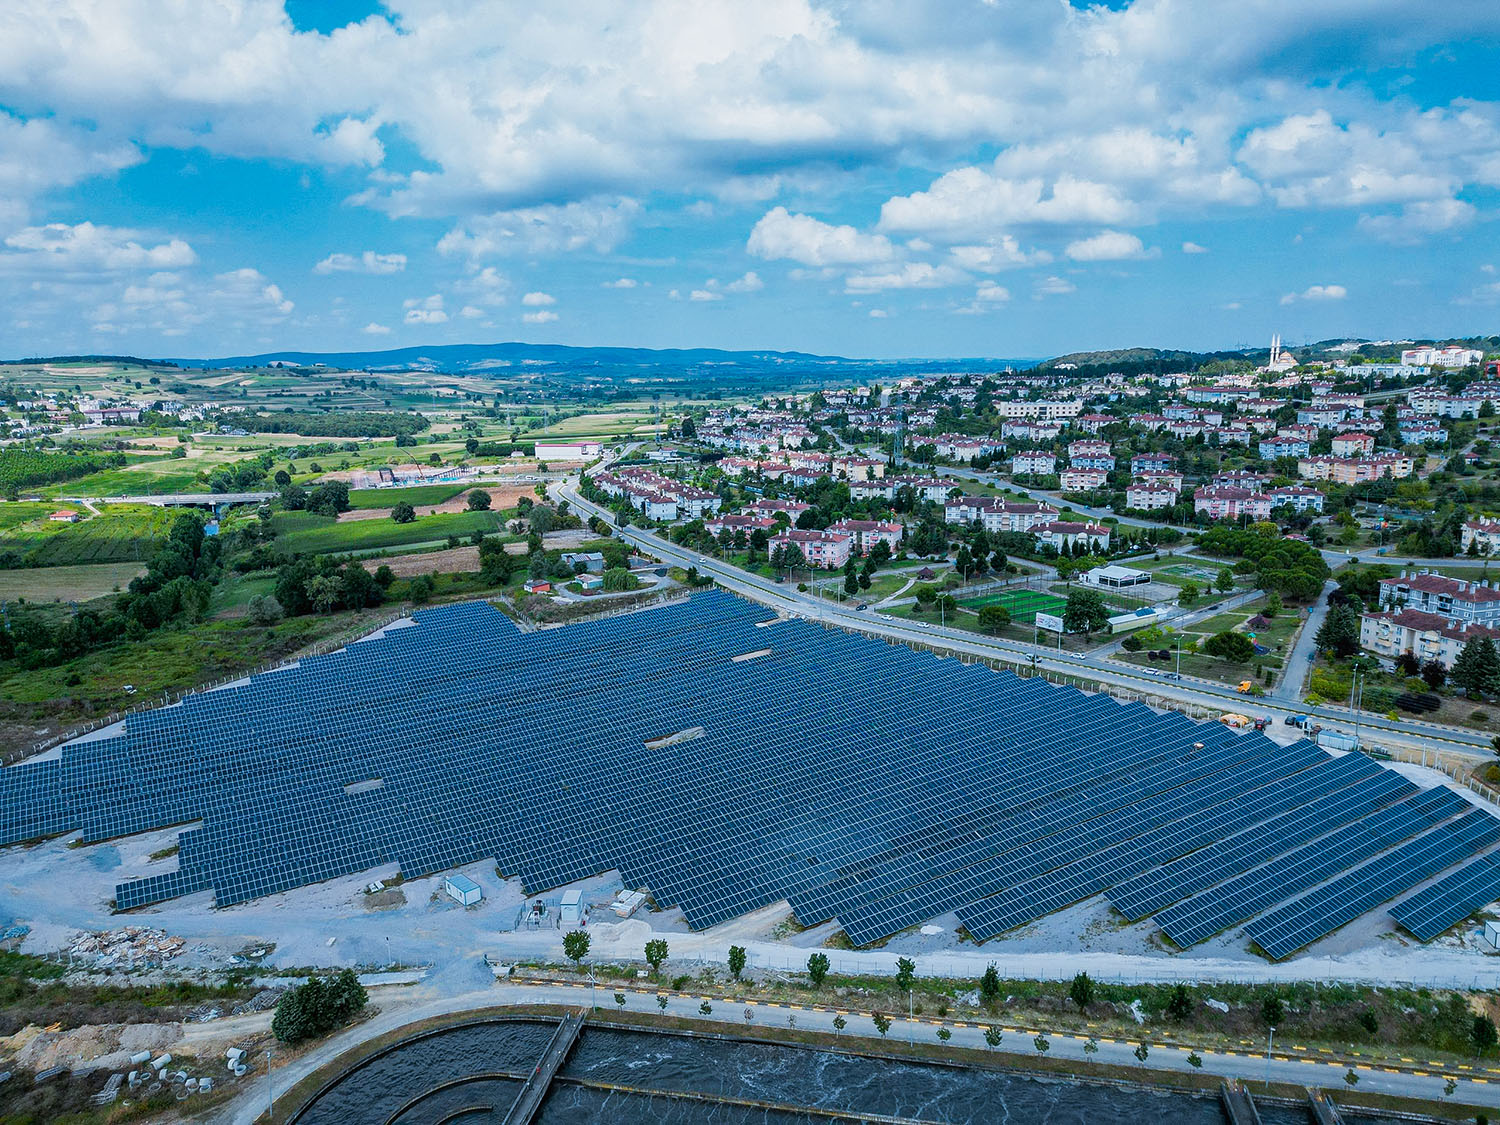 Büyükşehir Belediyesi’nin dev enerji projesi Karaman GES resmiyet kazanıyor